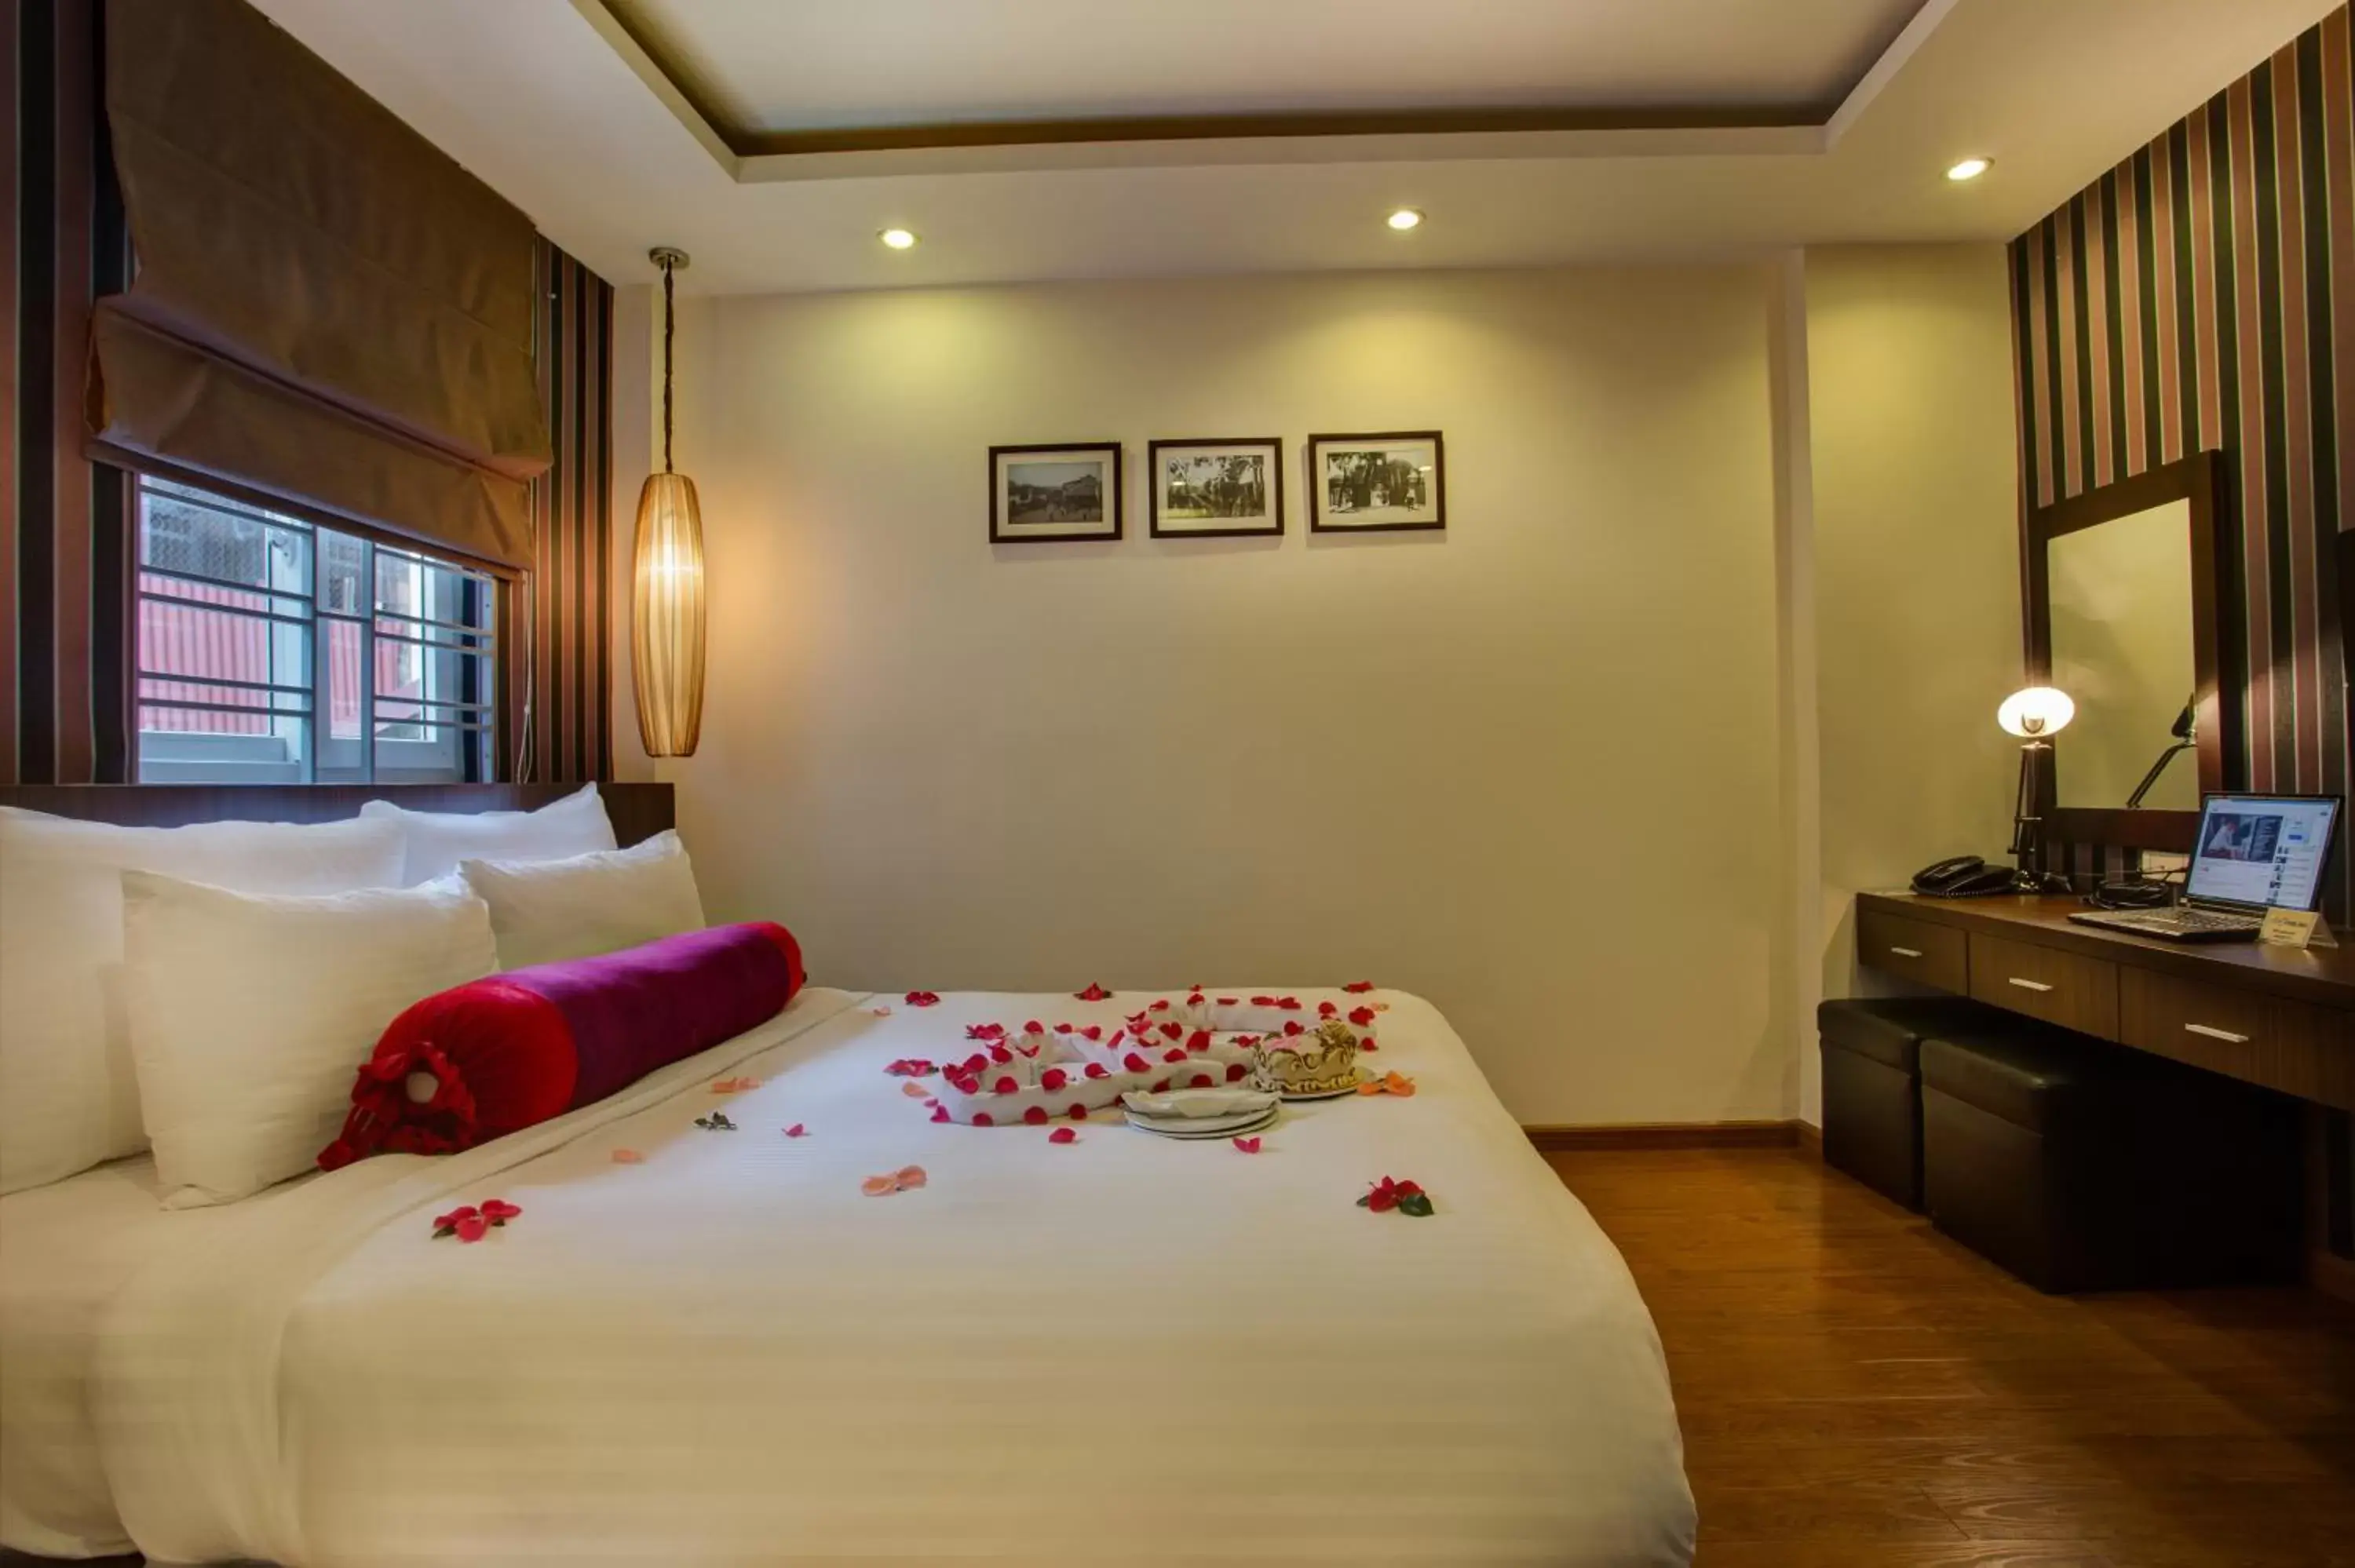 Bedroom, Bed in Golden Art Hotel